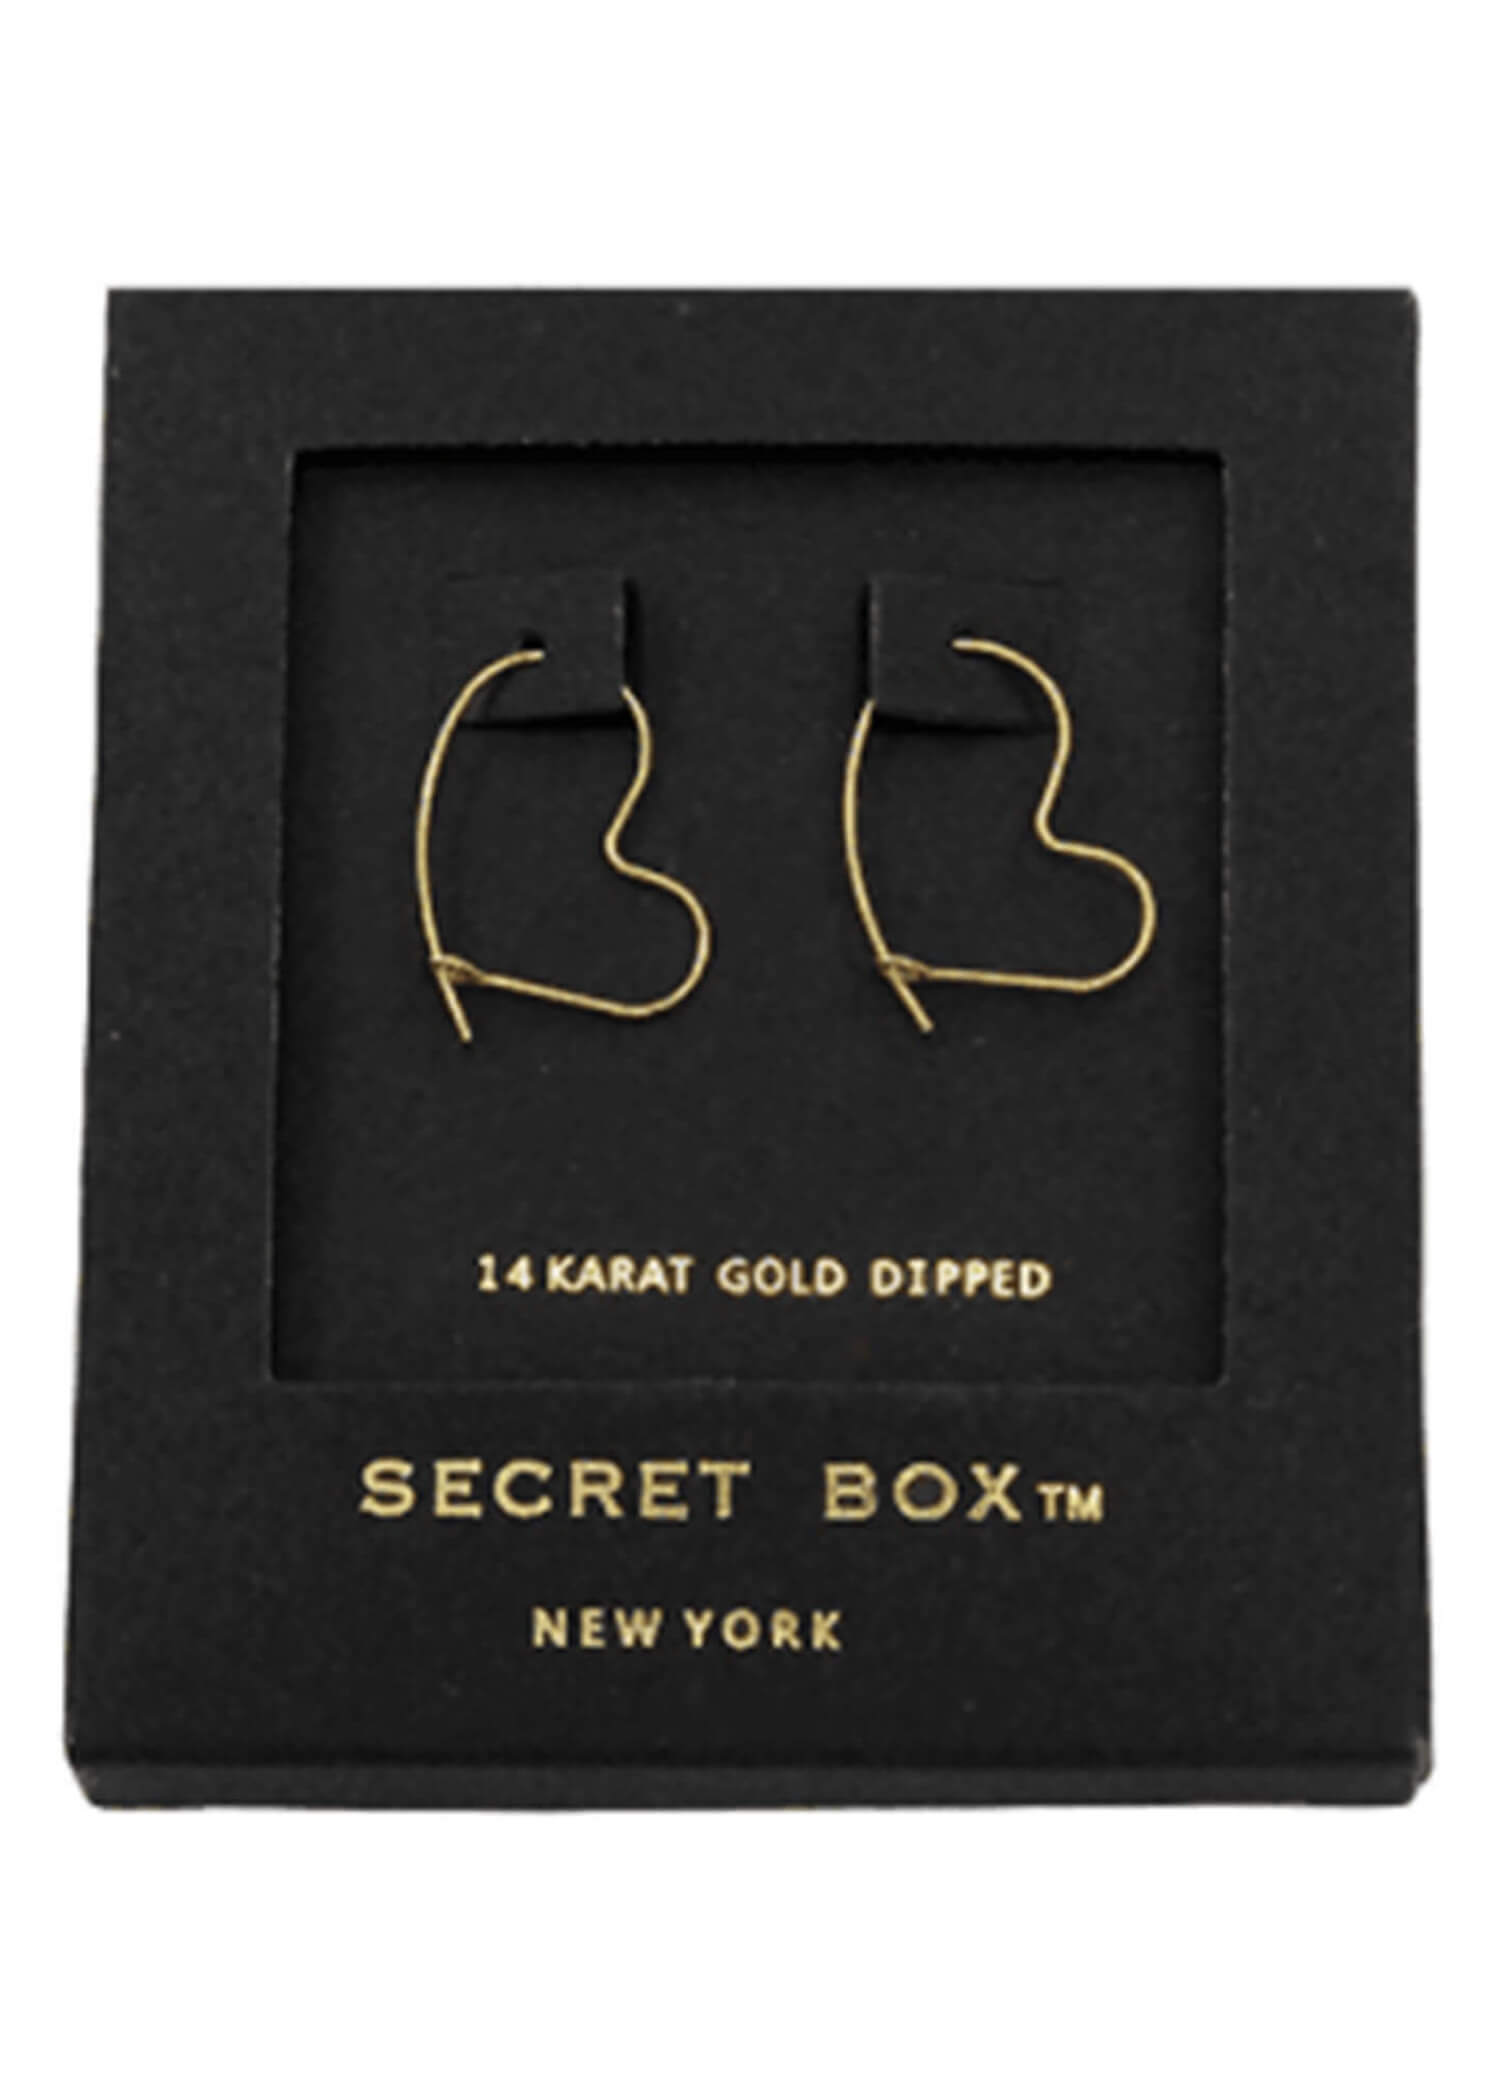 Heart Hoop Earrings - Gold/14kt Dipped Earrings MerciGrace Boutique.